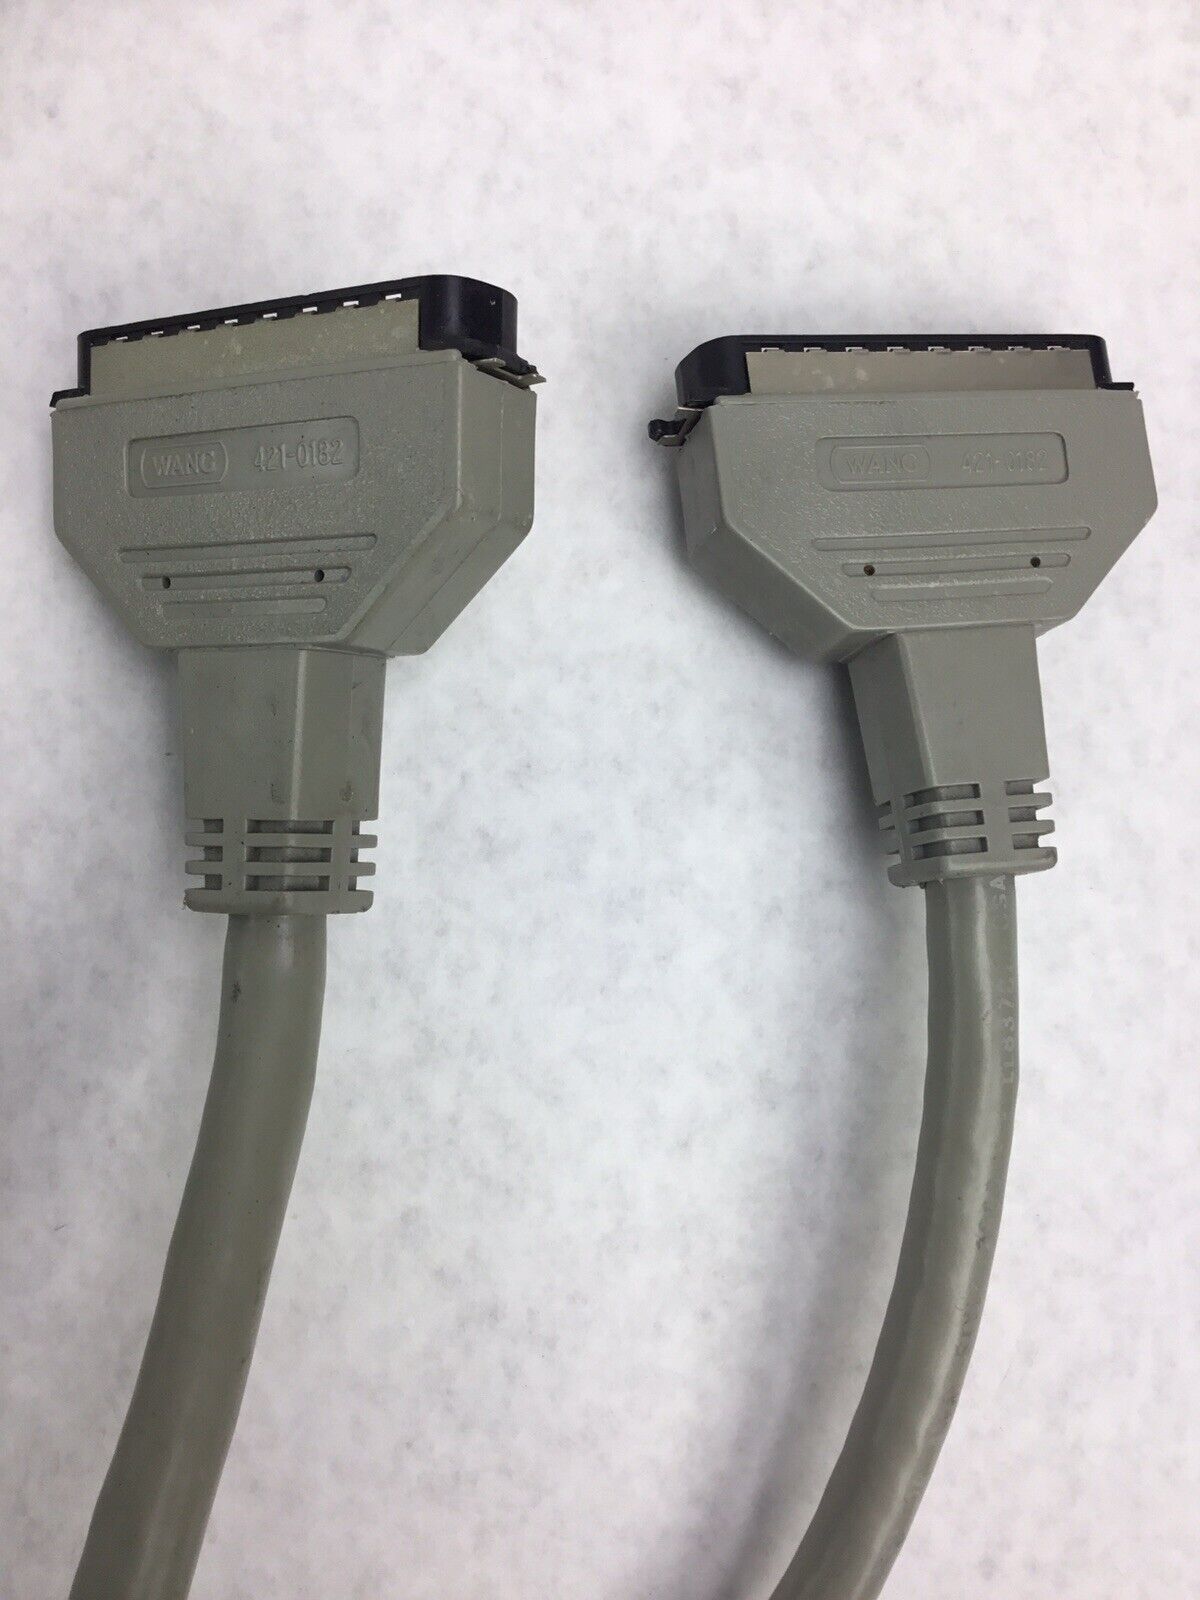 Wang Printer Interface Cable 421-0066